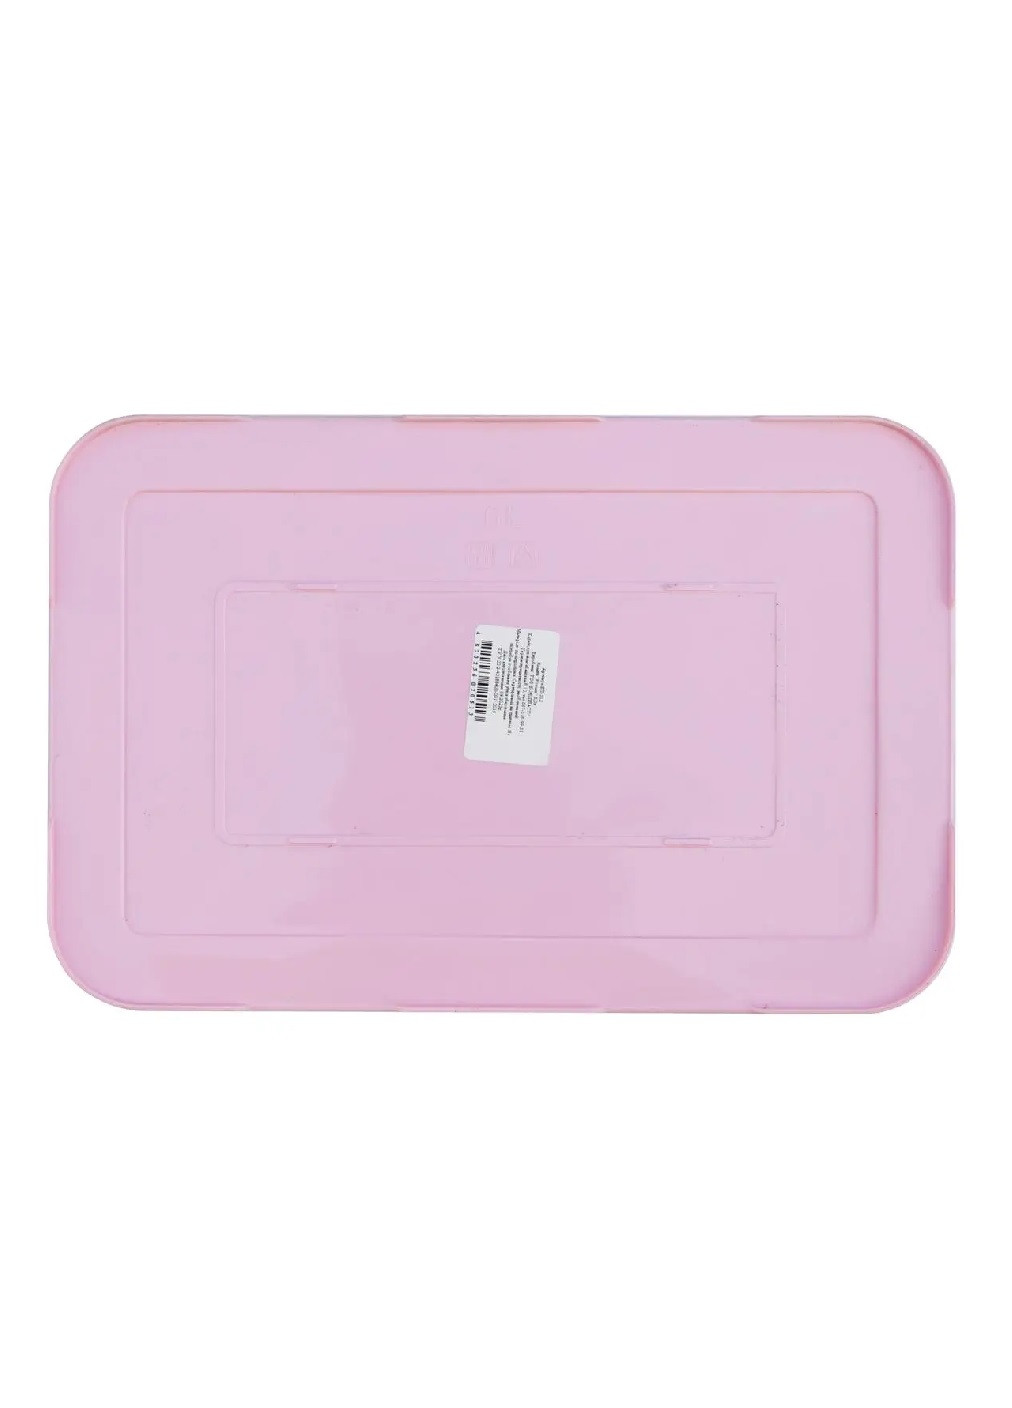 Корзина коробка бокс органайзер для хранения вещей универсальная с крышкой ручками 18.5×28×14 см (475604-Prob) Ротанг розовая Unbranded (269236468)